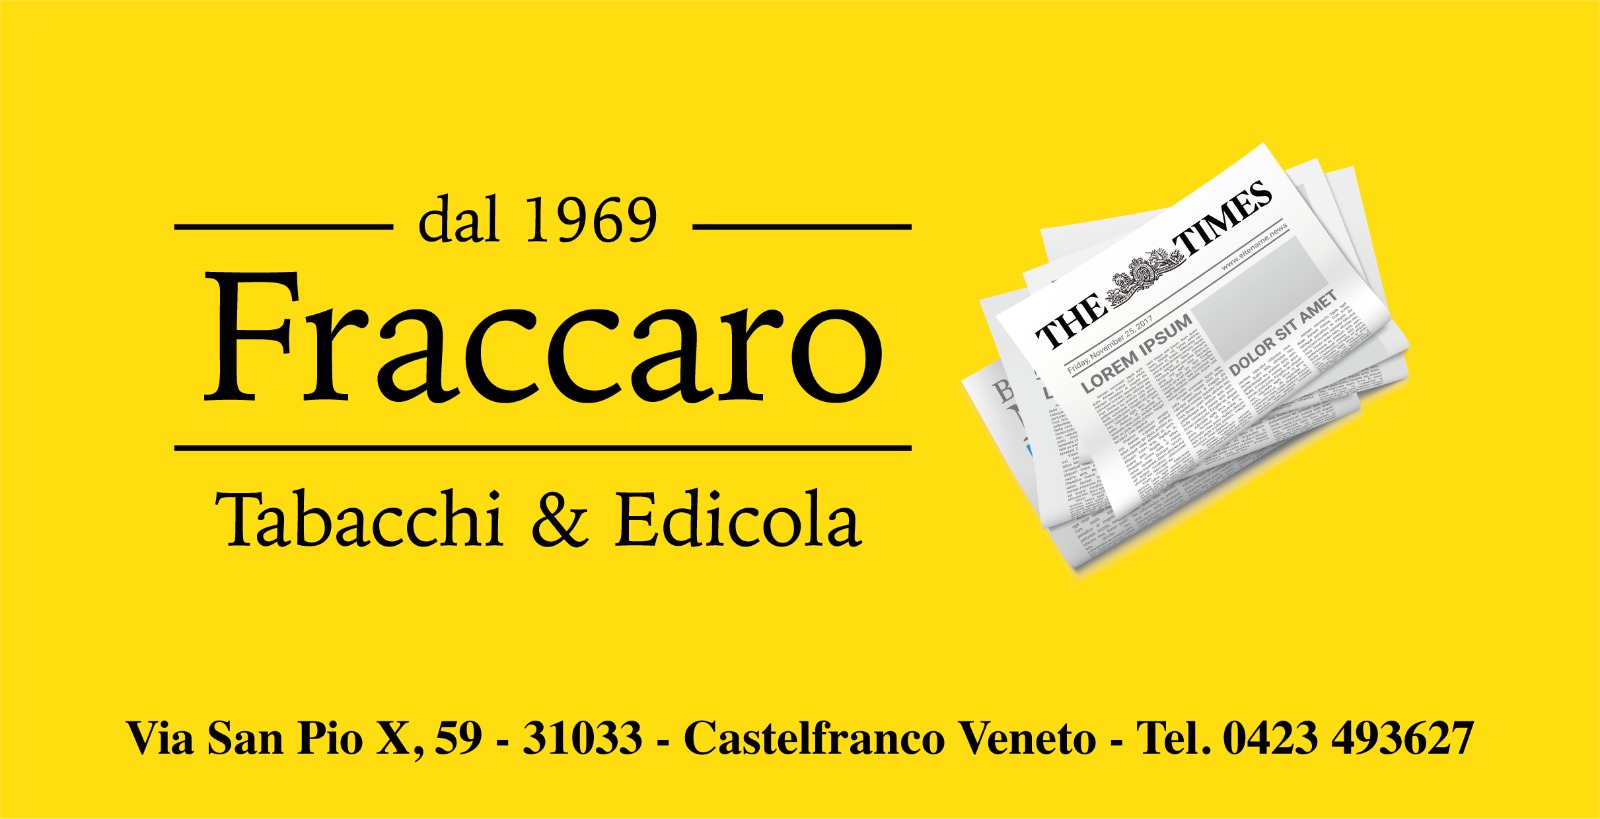 Fraccaro Tabacchi Edicola